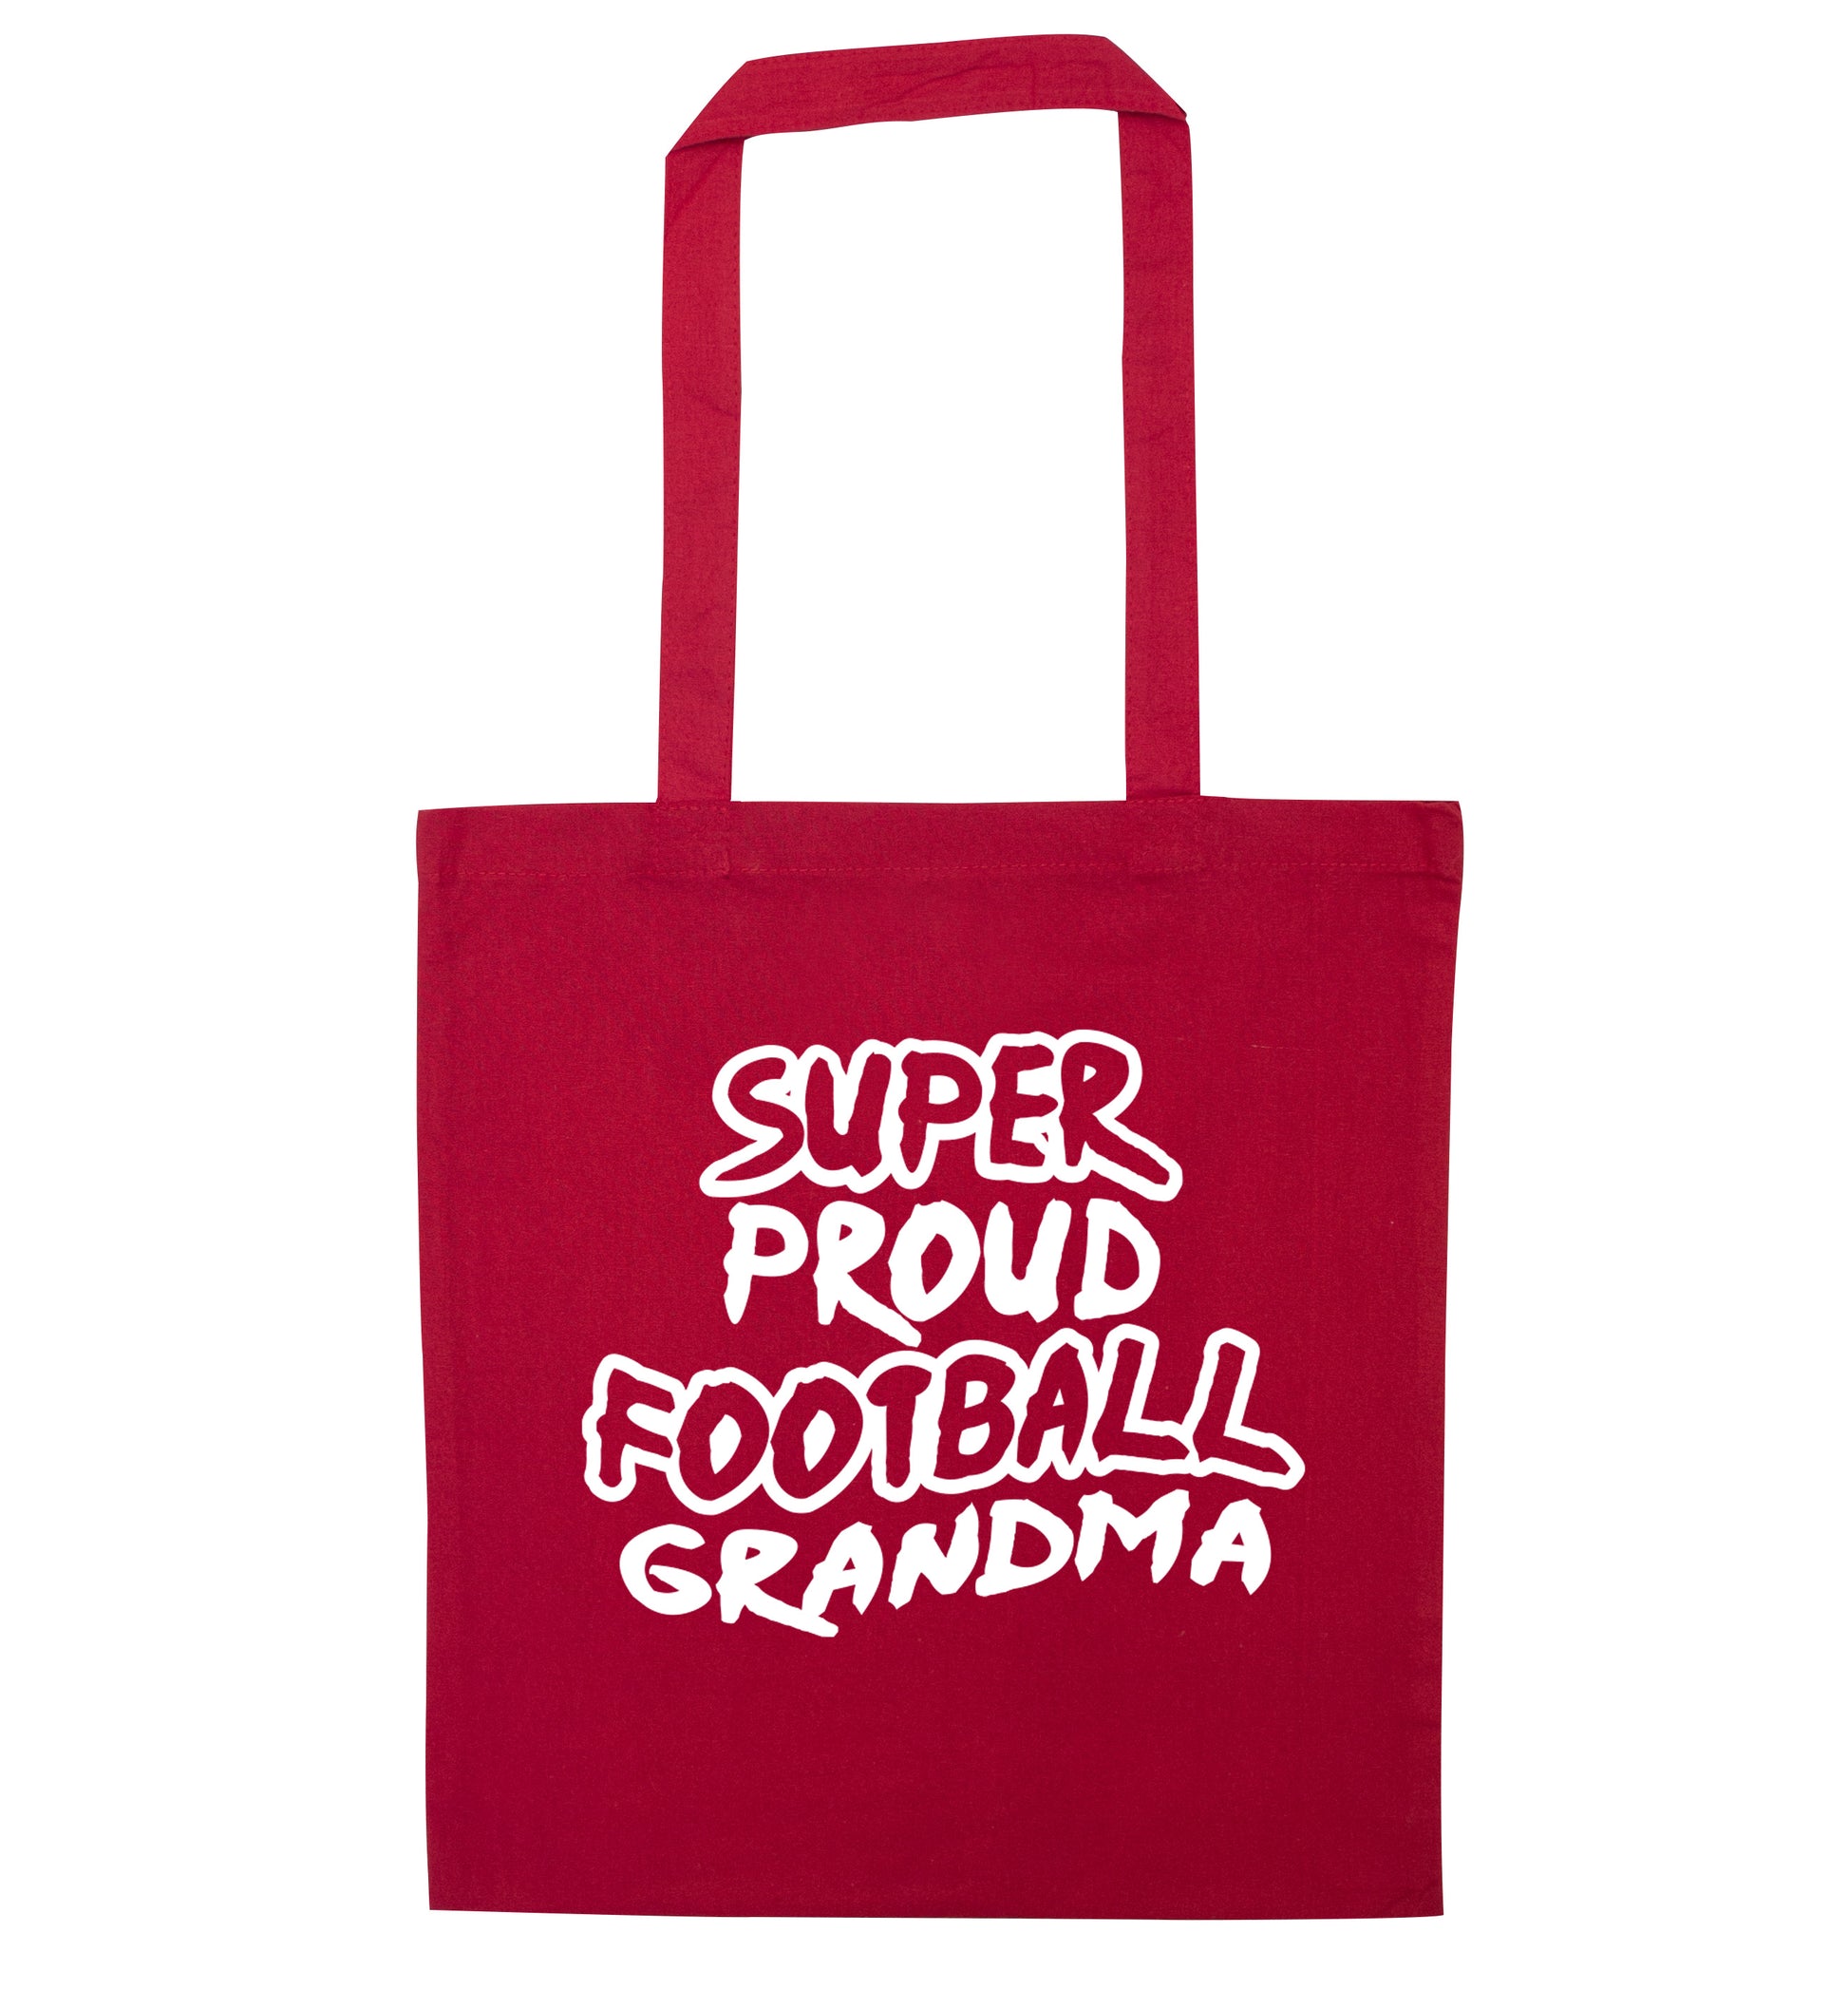 Super proud football grandma red tote bag